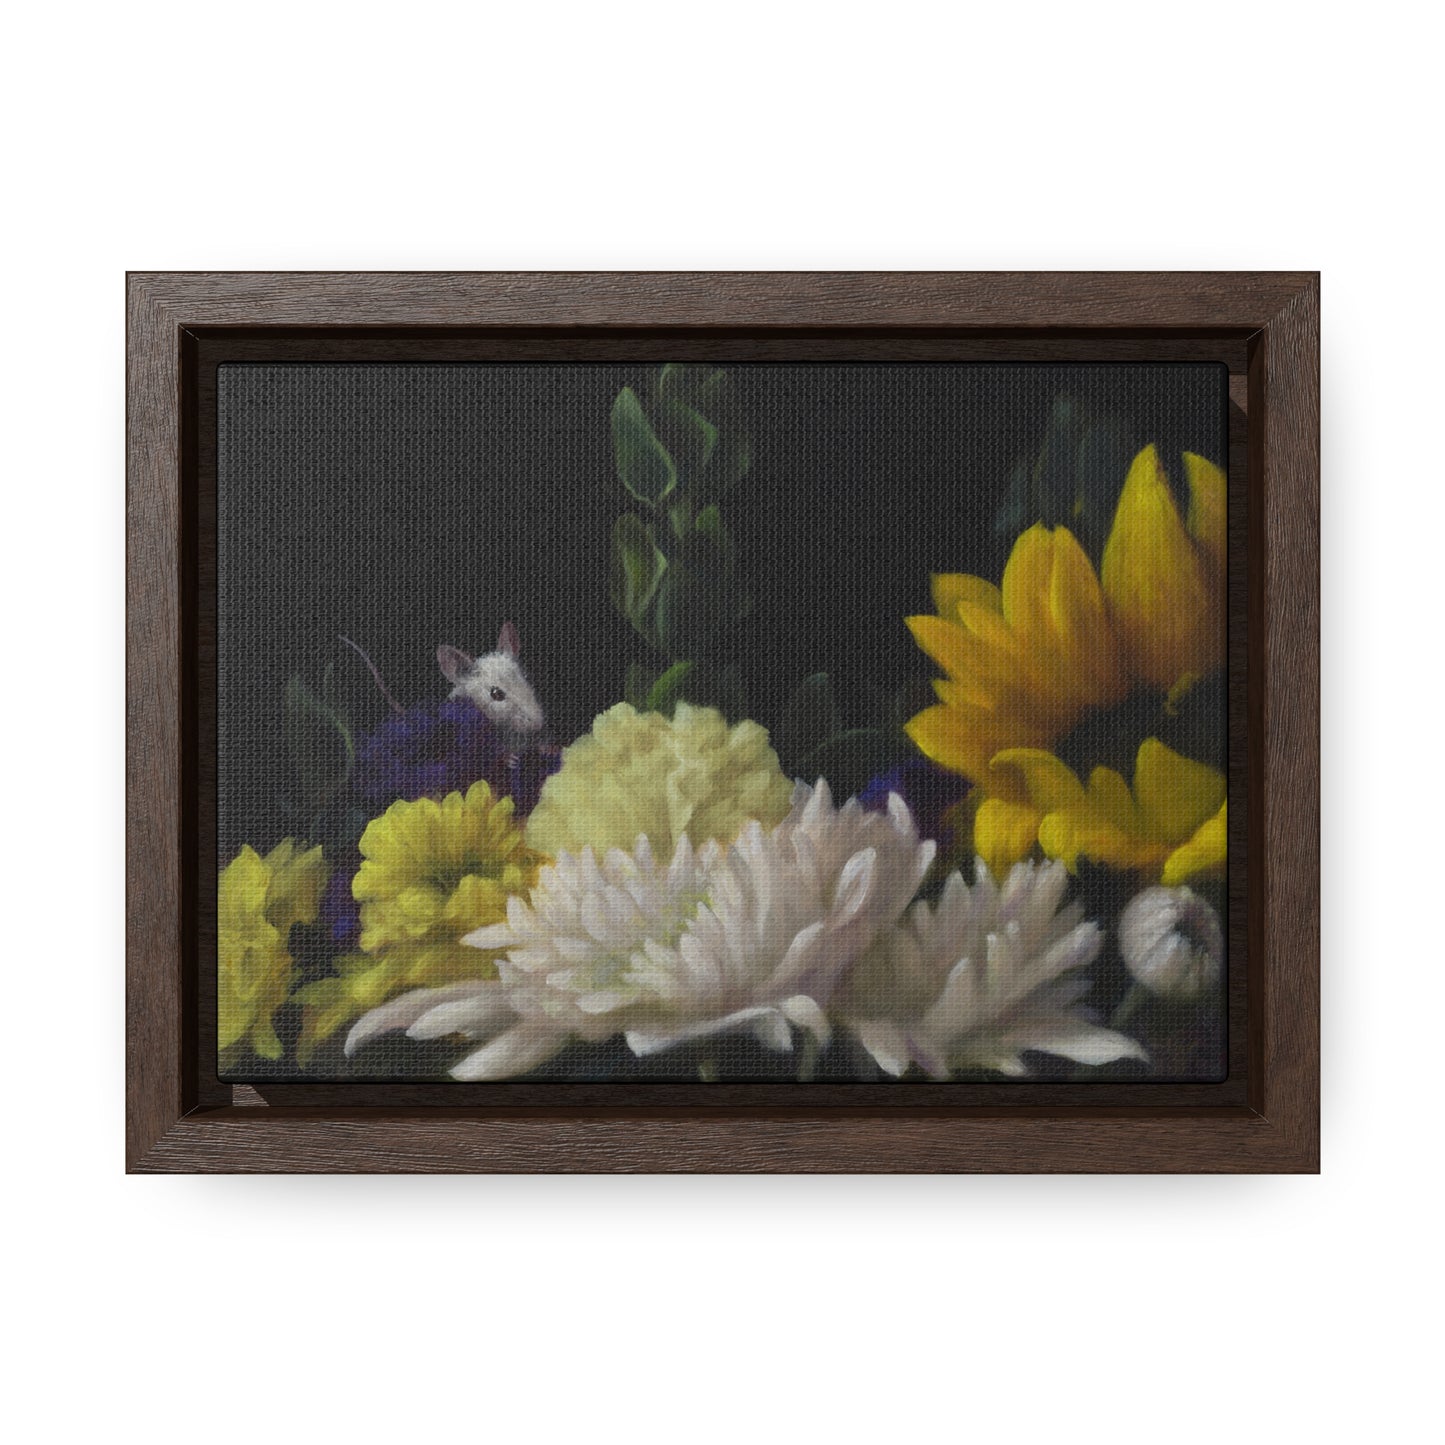 Stuart Dunkel: "Flower Power" - Framed Canvas Reproduction